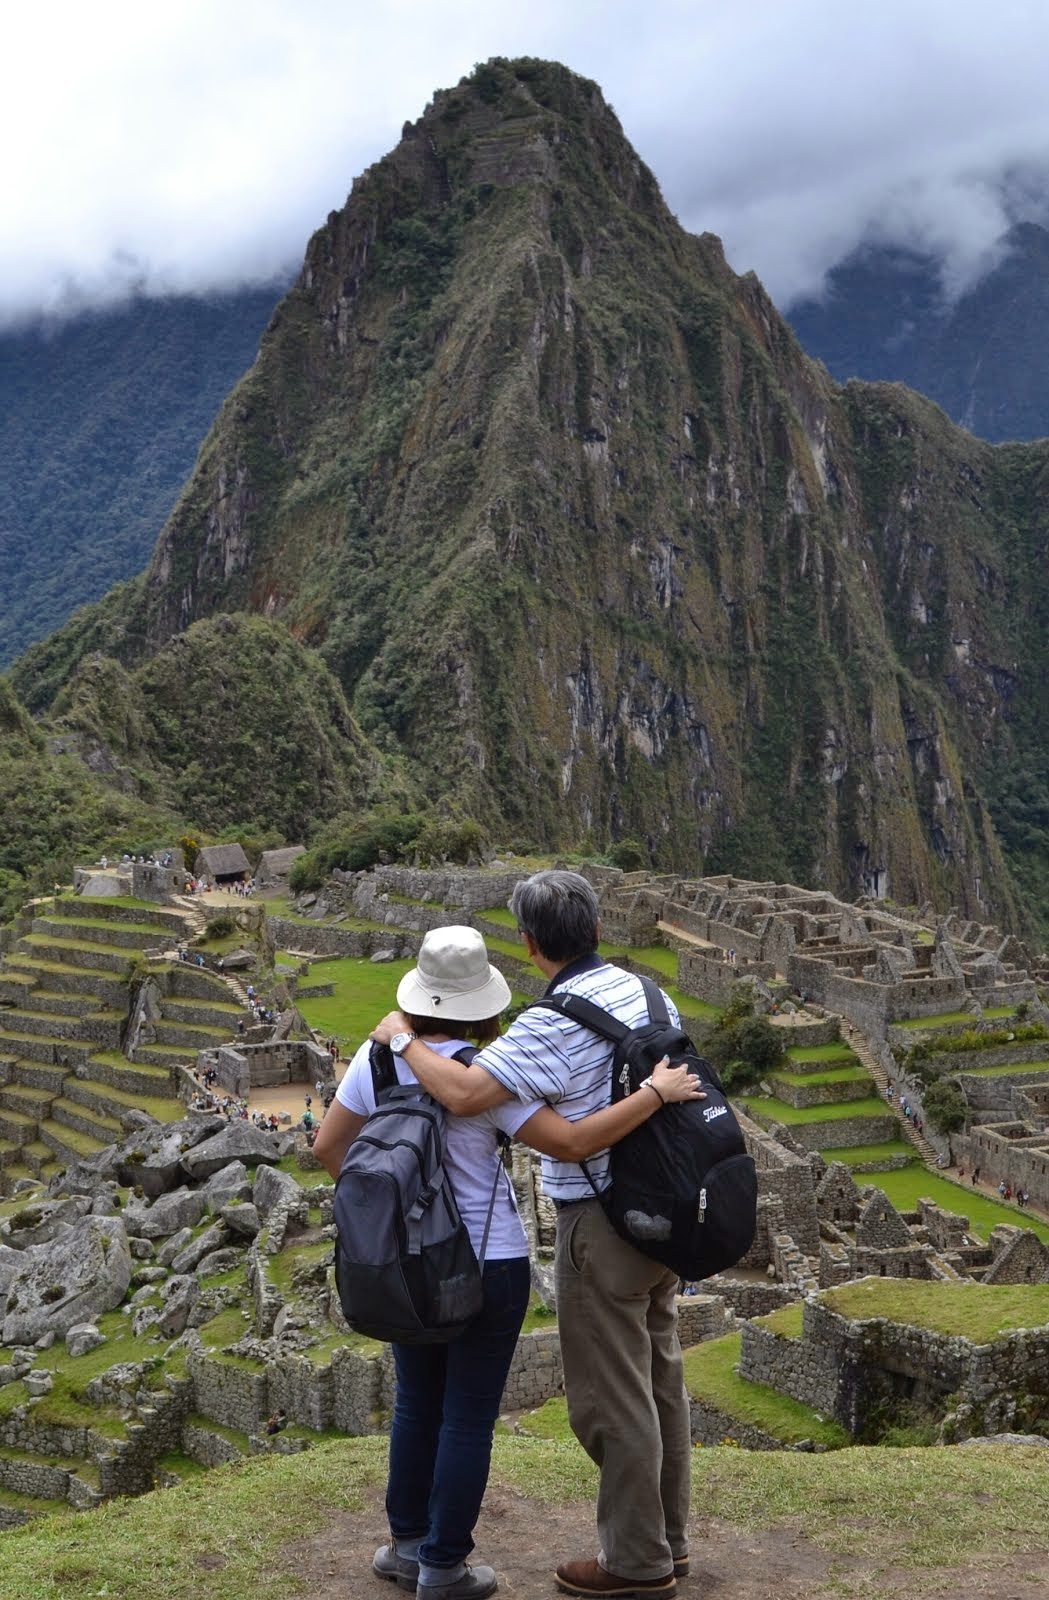 Our Machu Picchu Story..